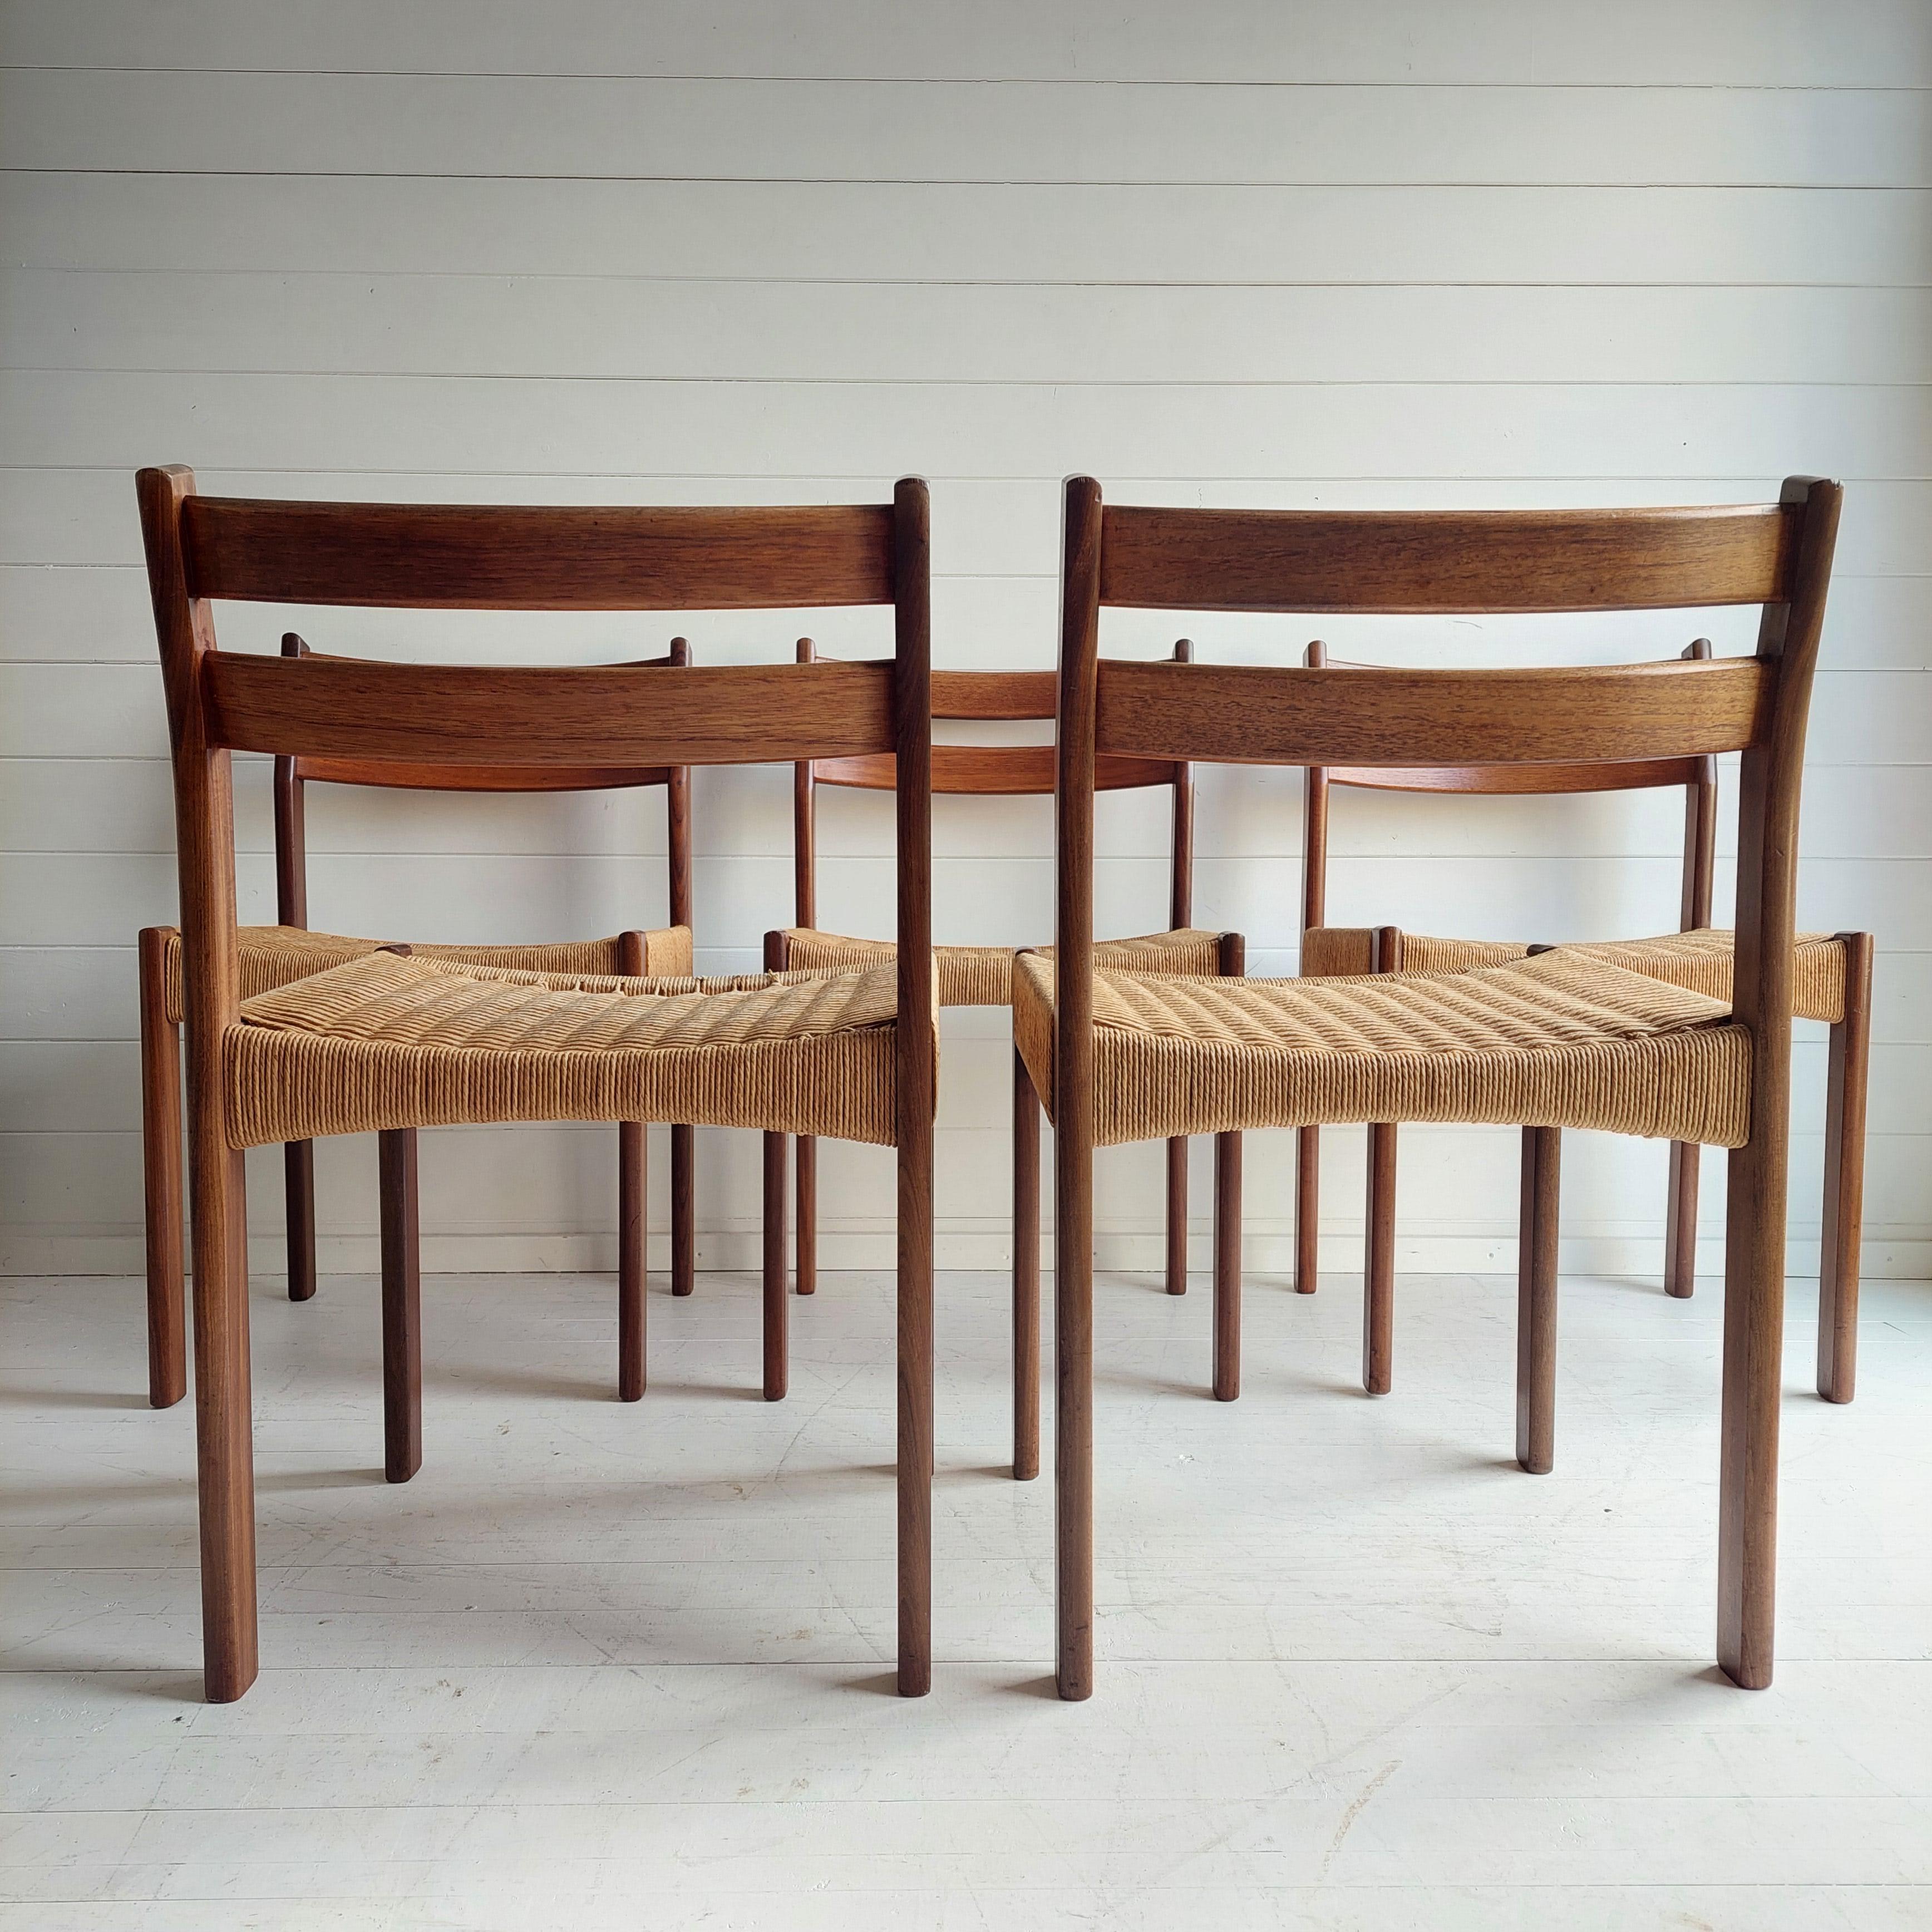 20th Century Danish Dining Chairs By Arne Hovmand Olsen For Mogens Kold, 1960s, Set Of 5